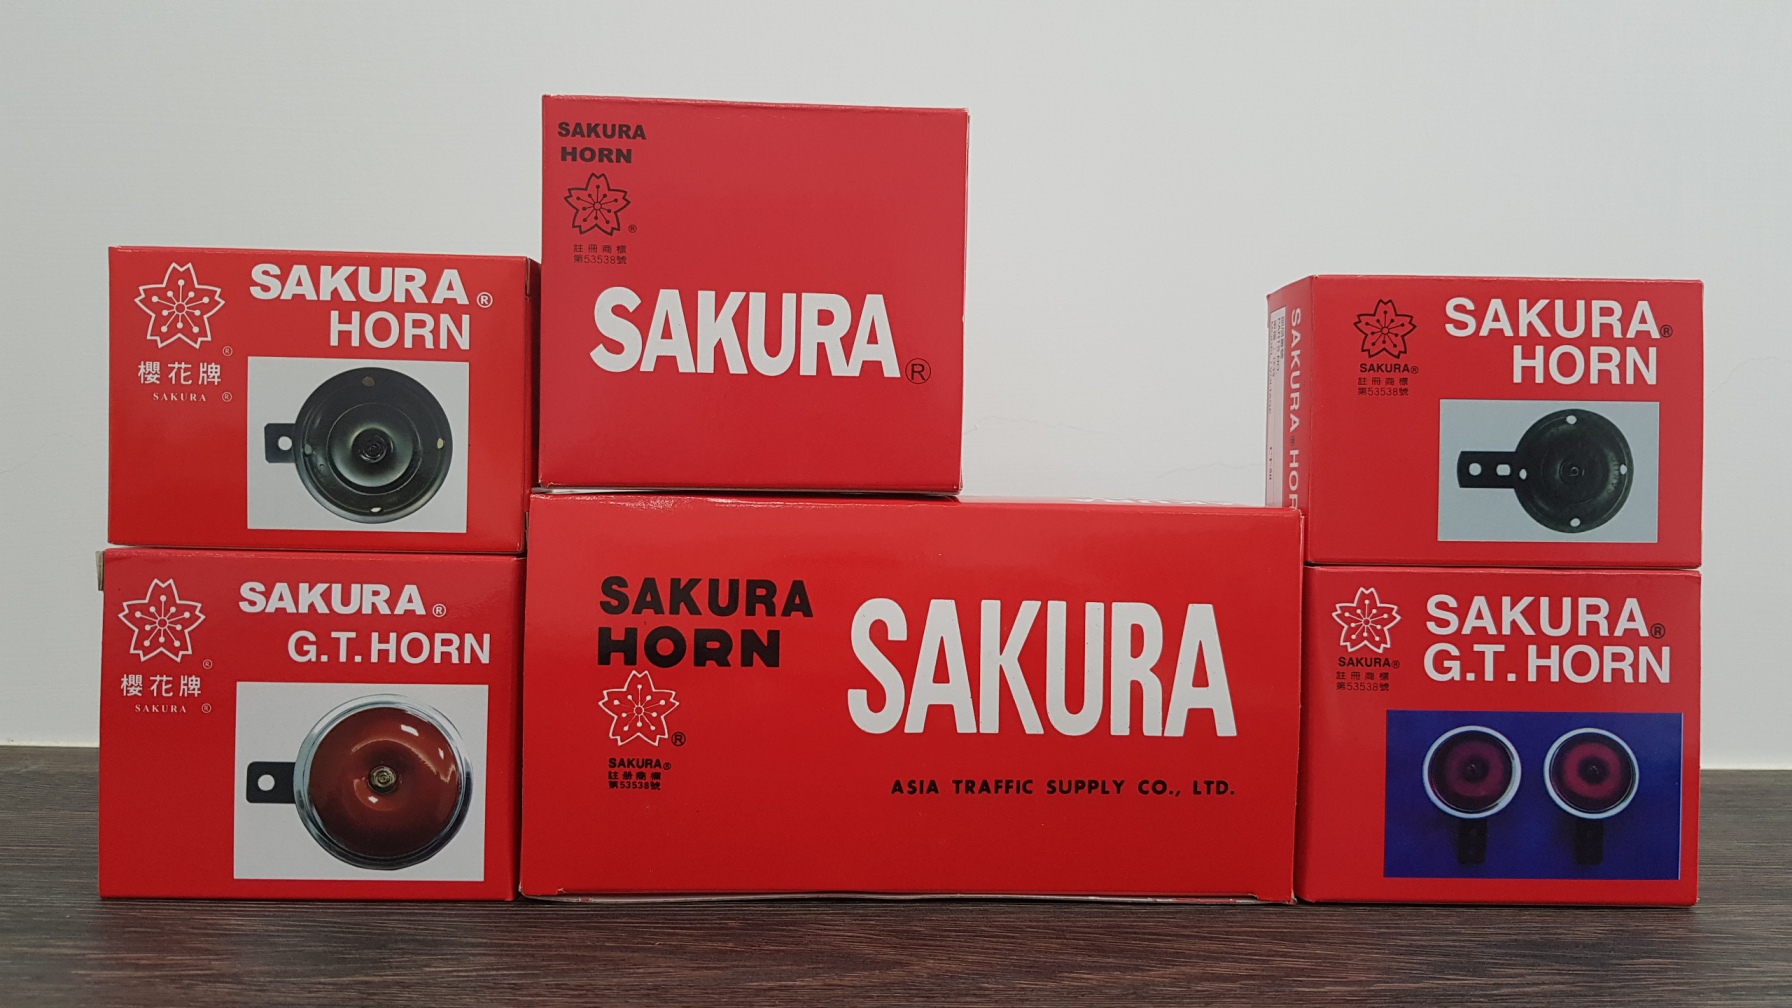 Bitte erkennen Sie die rote Verpackung von SAKURA HORN.